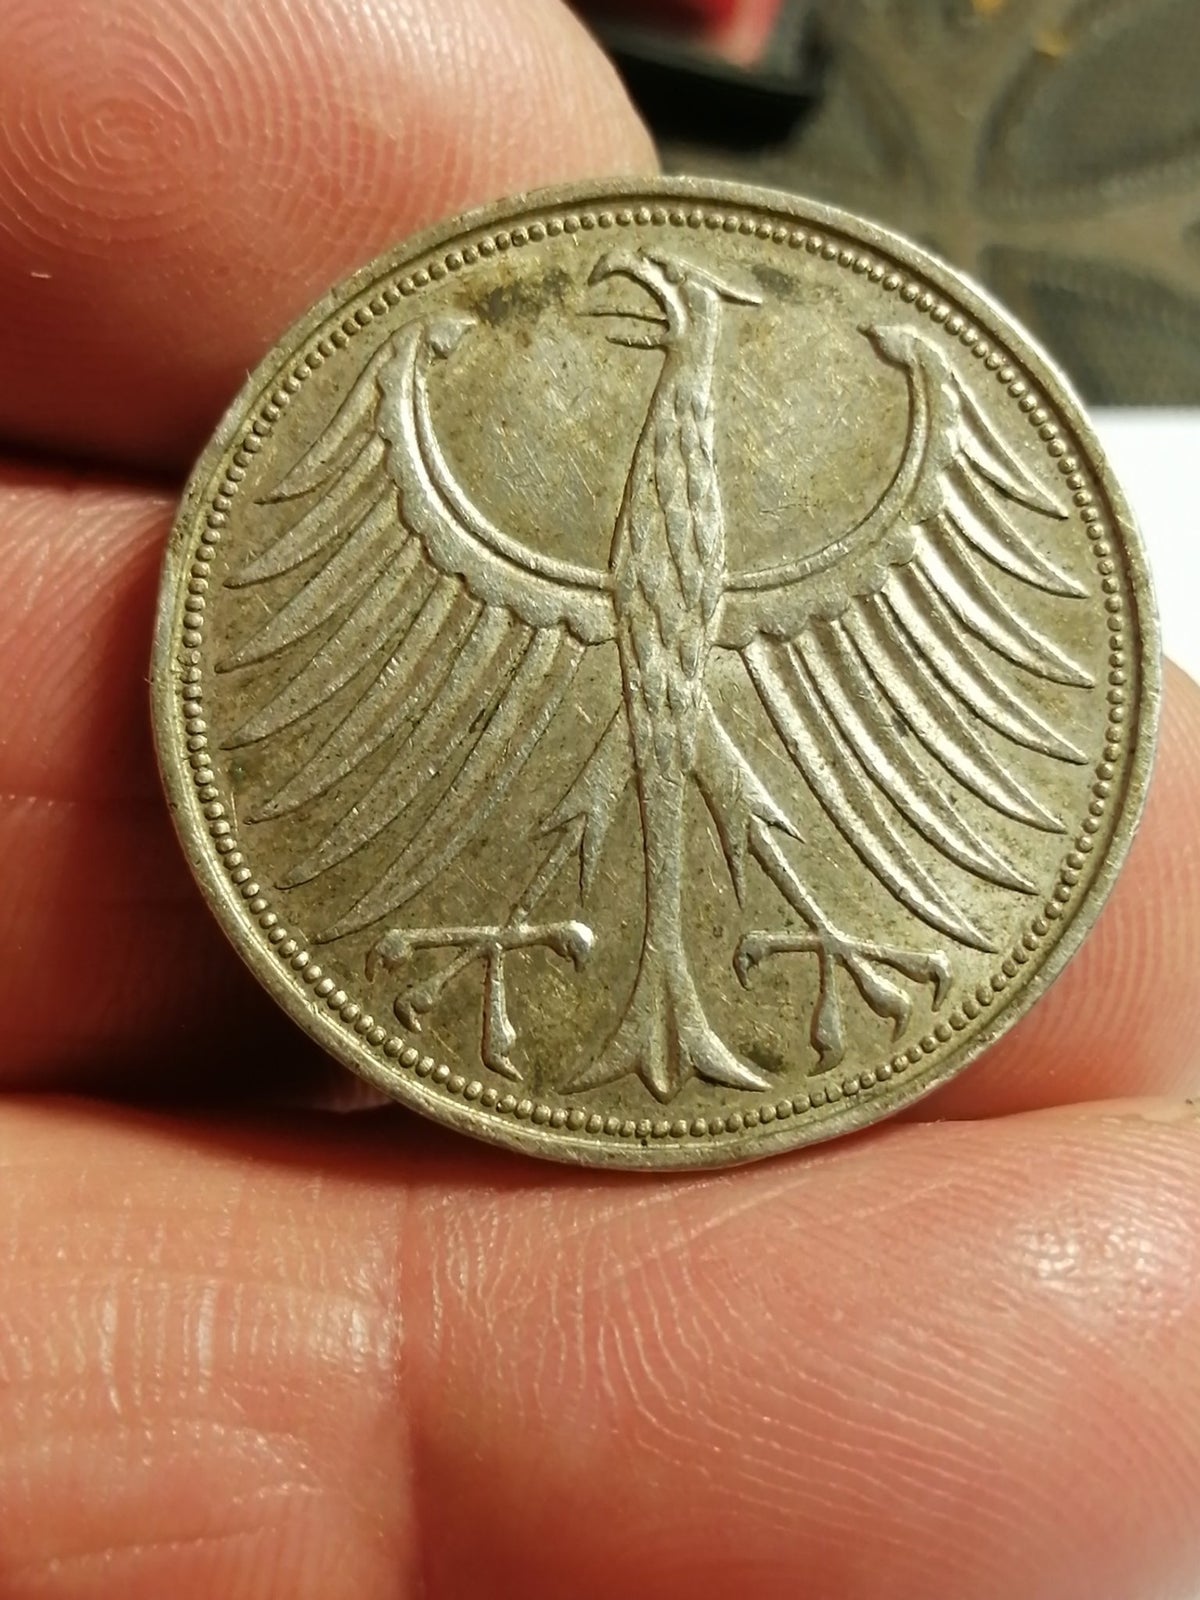 Vesteuropa, mønter, 5 MARK